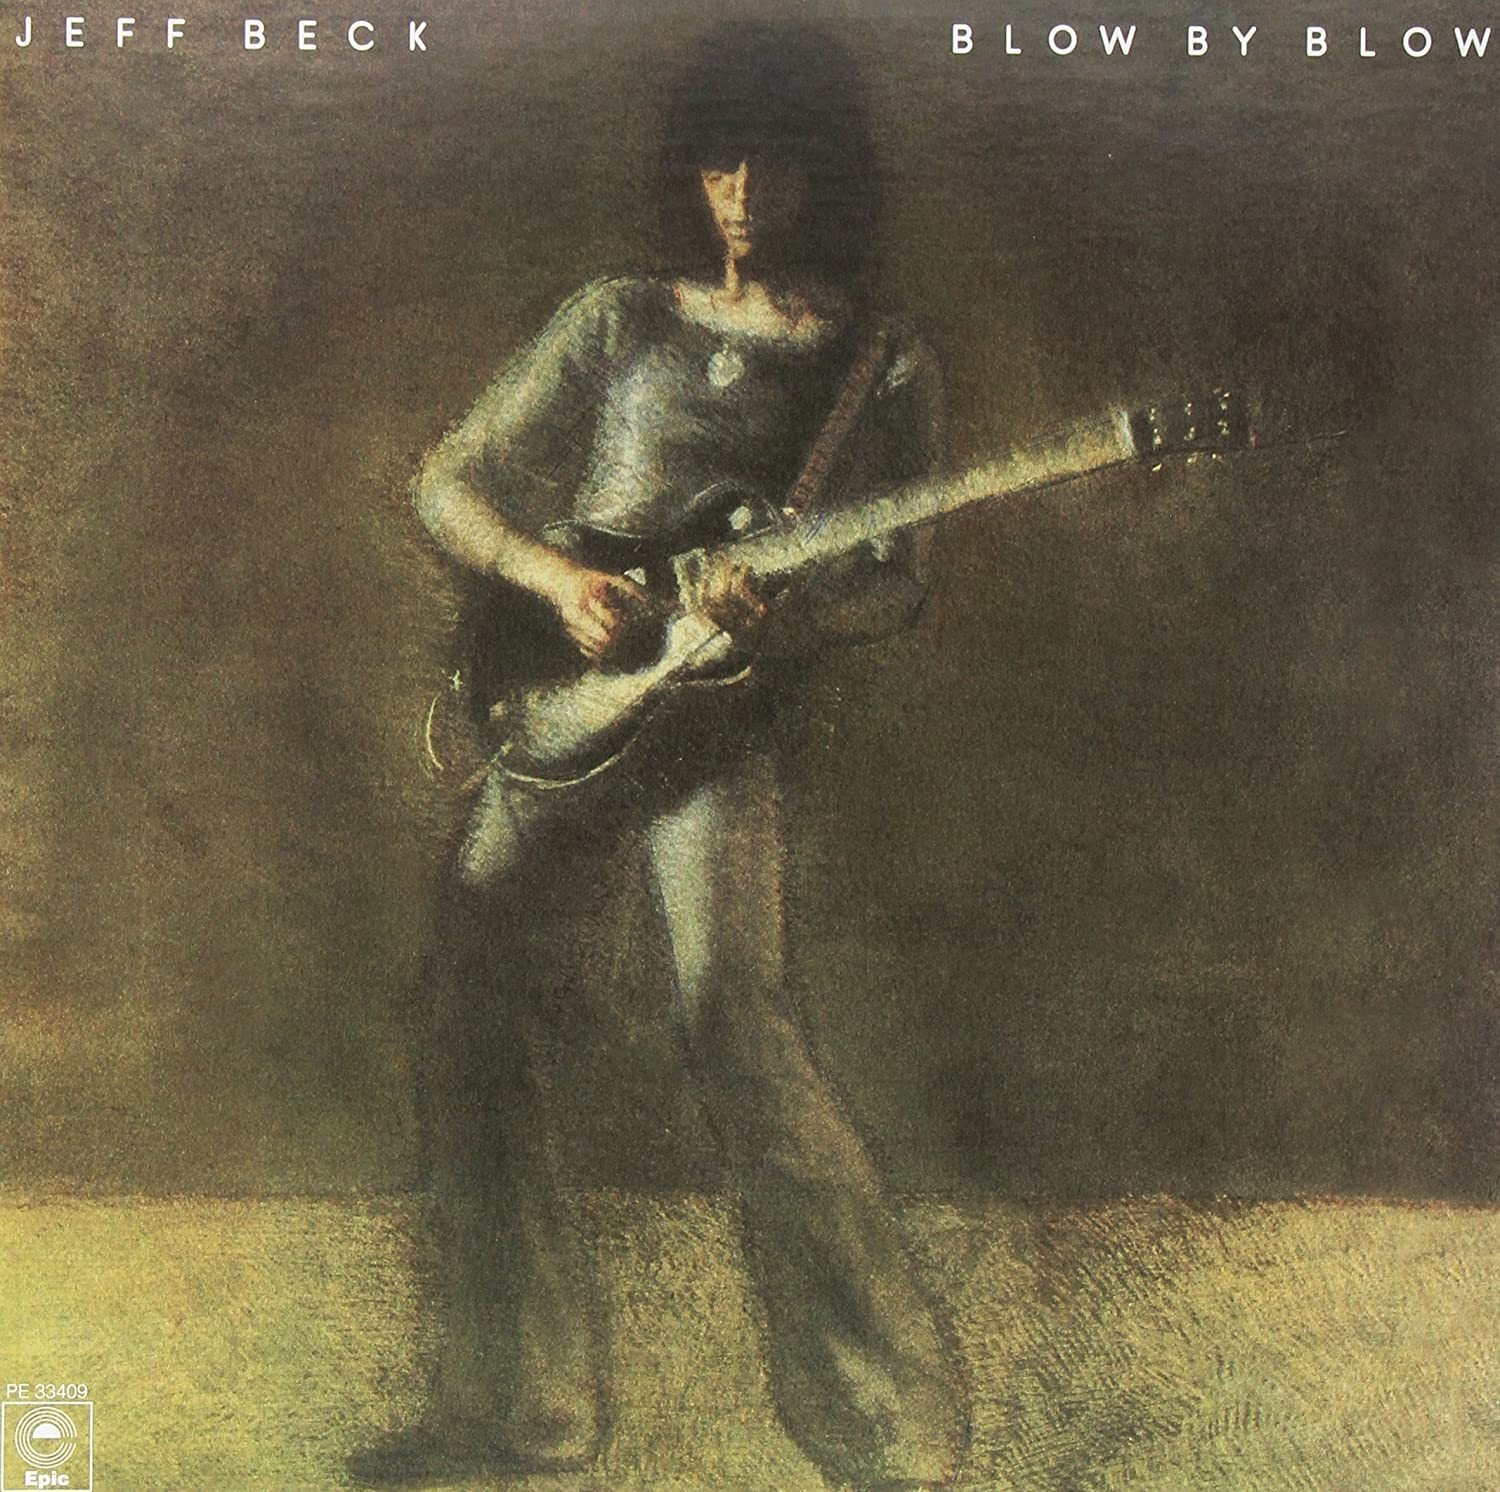 Disc de vinil Jeff Beck - Blow By Blow (2 LP)